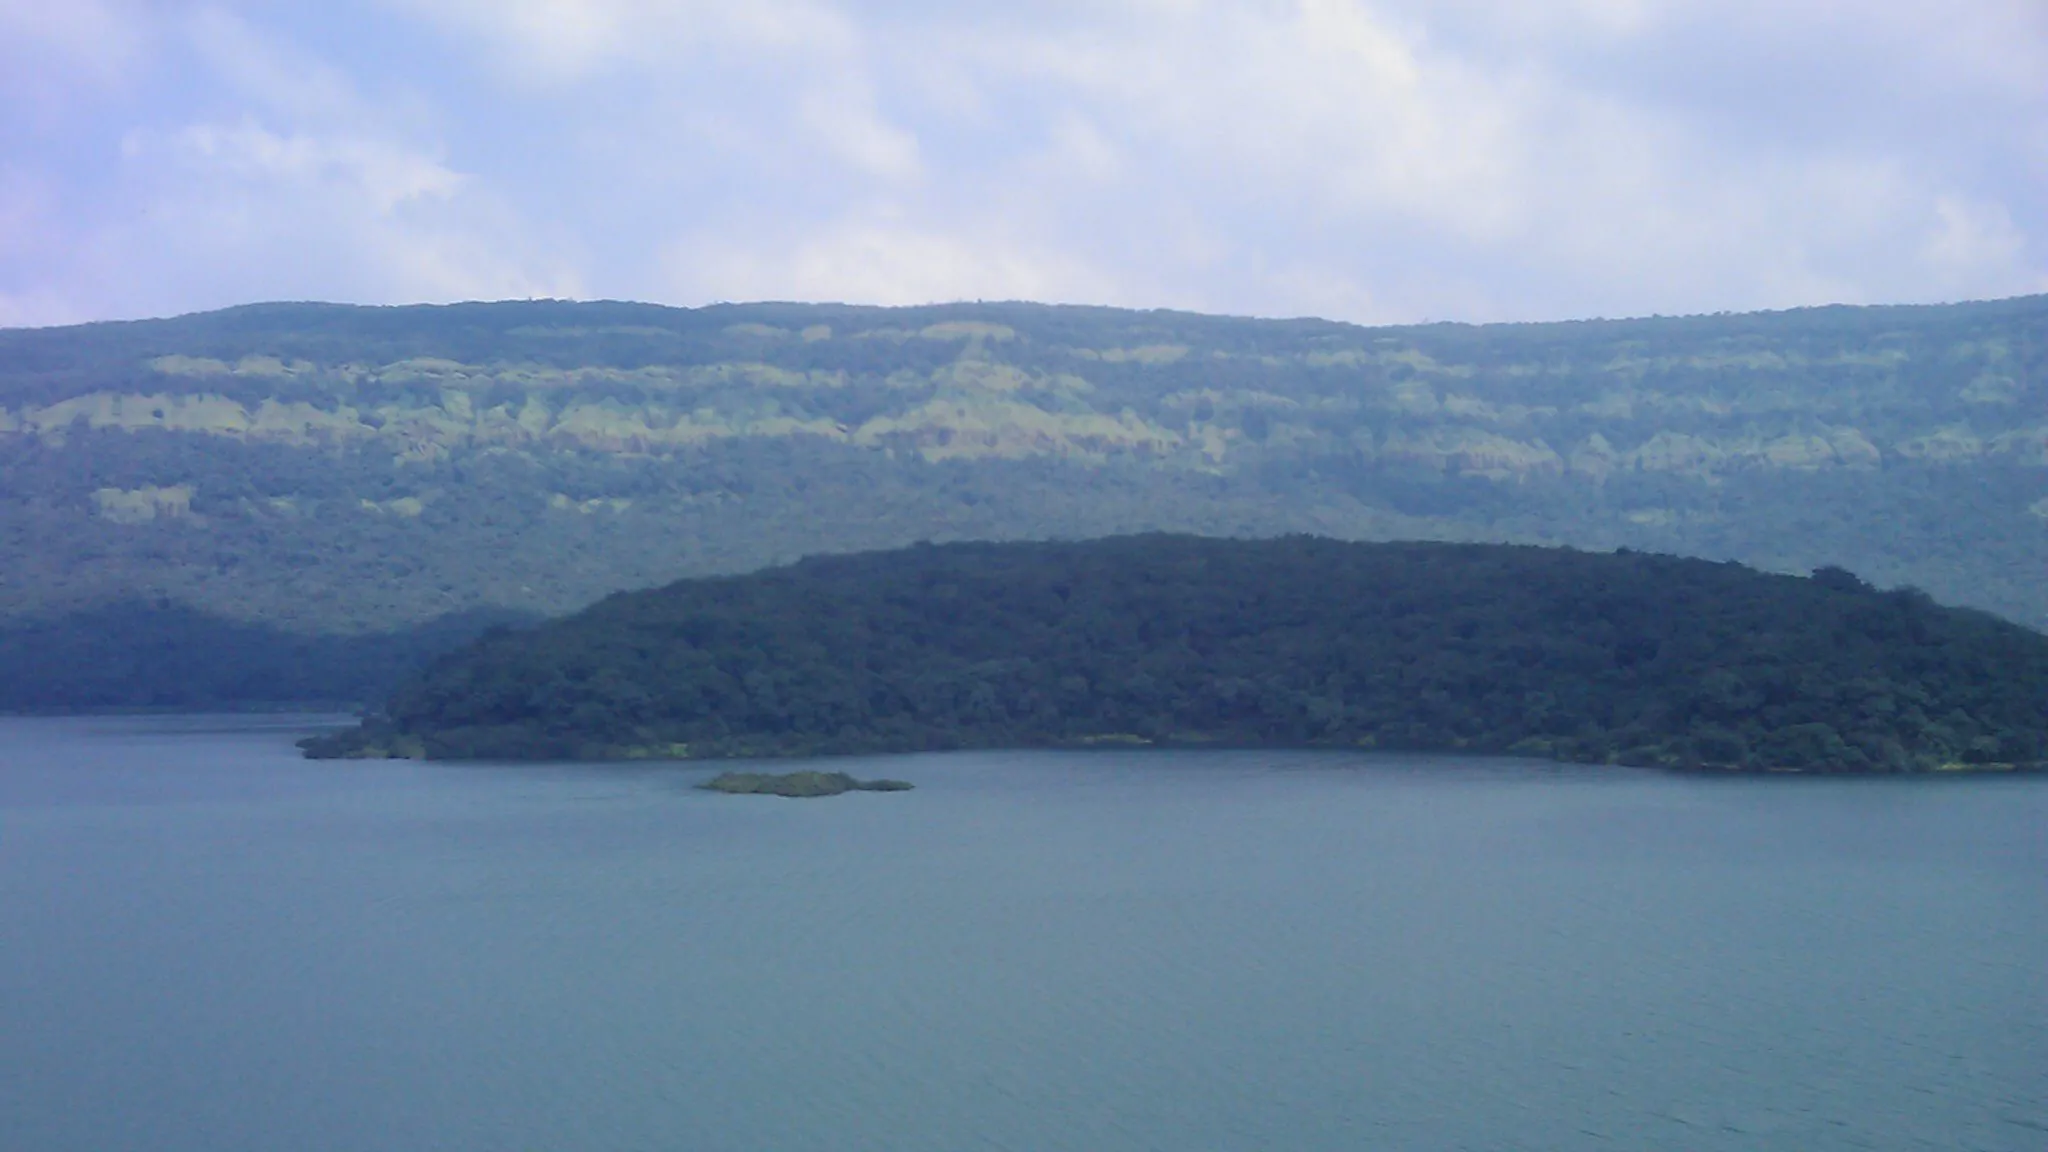 Shivaji Sagar Lake